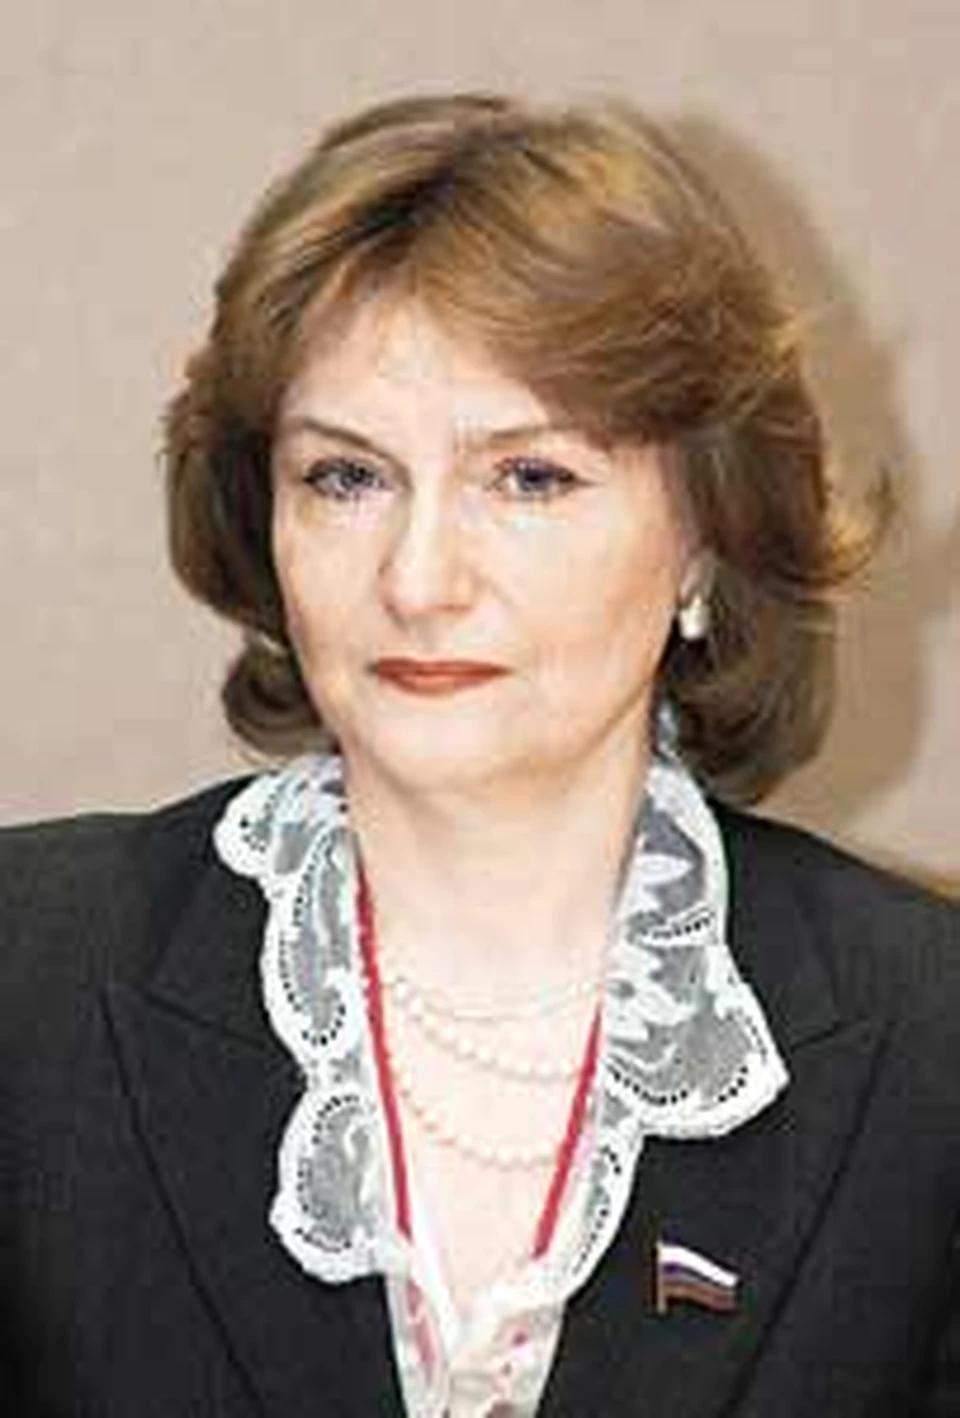 Член фракции «Родина» Наталья Нарочницкая известна своими радикальными взглядами на внешнюю политику России.